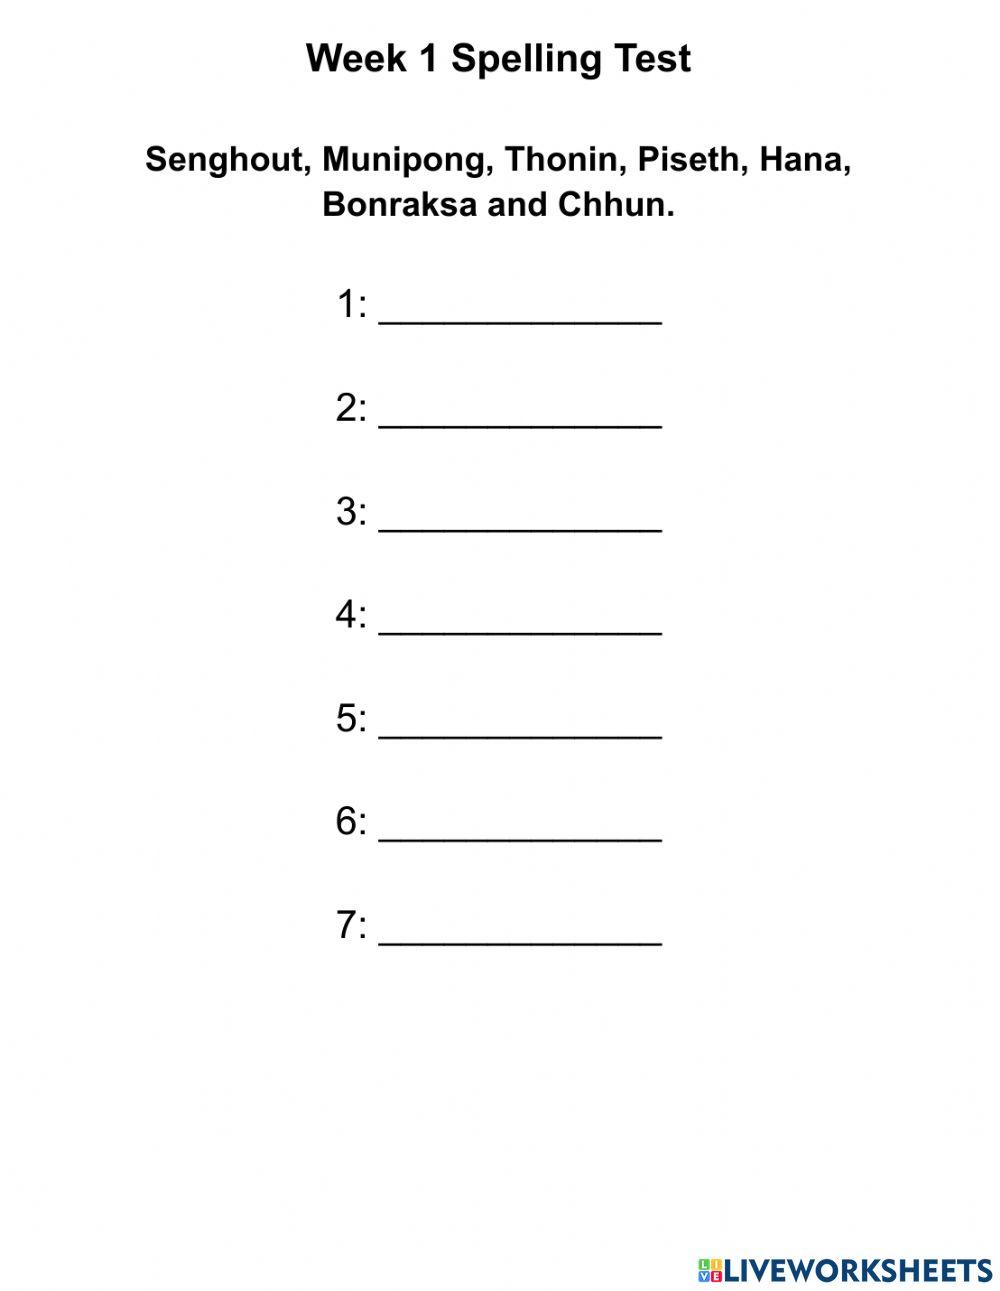 Week 1 Spelling Test - Senghout, Munipong, Thonin, Piseth, Hana, Bonraksa and Chhun